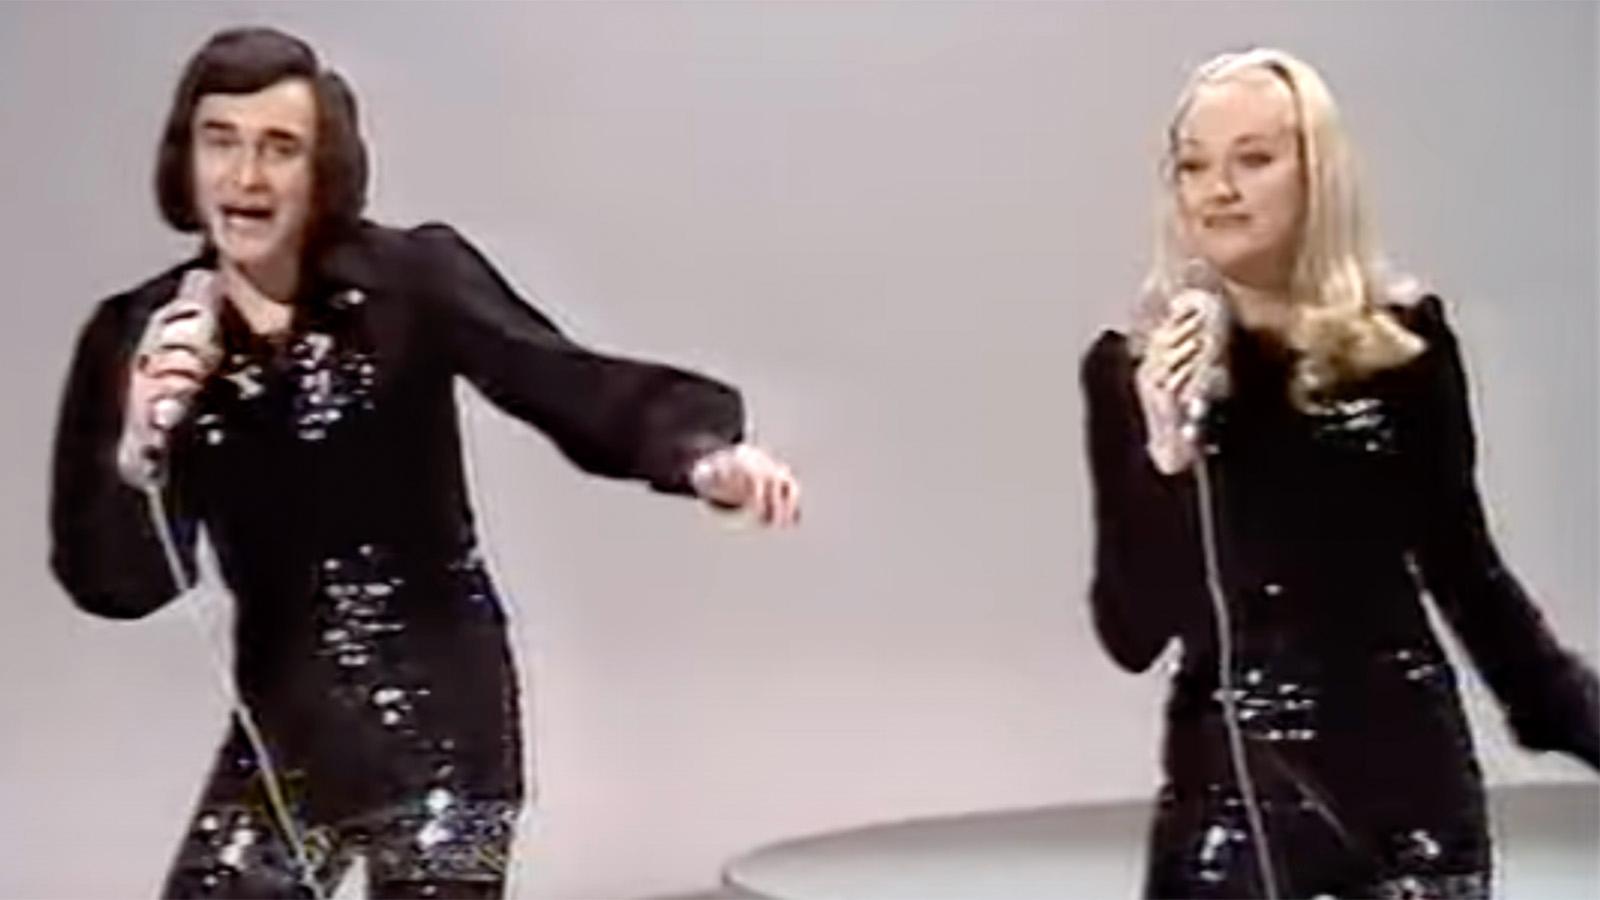 Nicole & Hugo tävlade med låten ”Baby, baby” i Eurovision song contest 1973, där de slutade på 17:e och sista plats. 